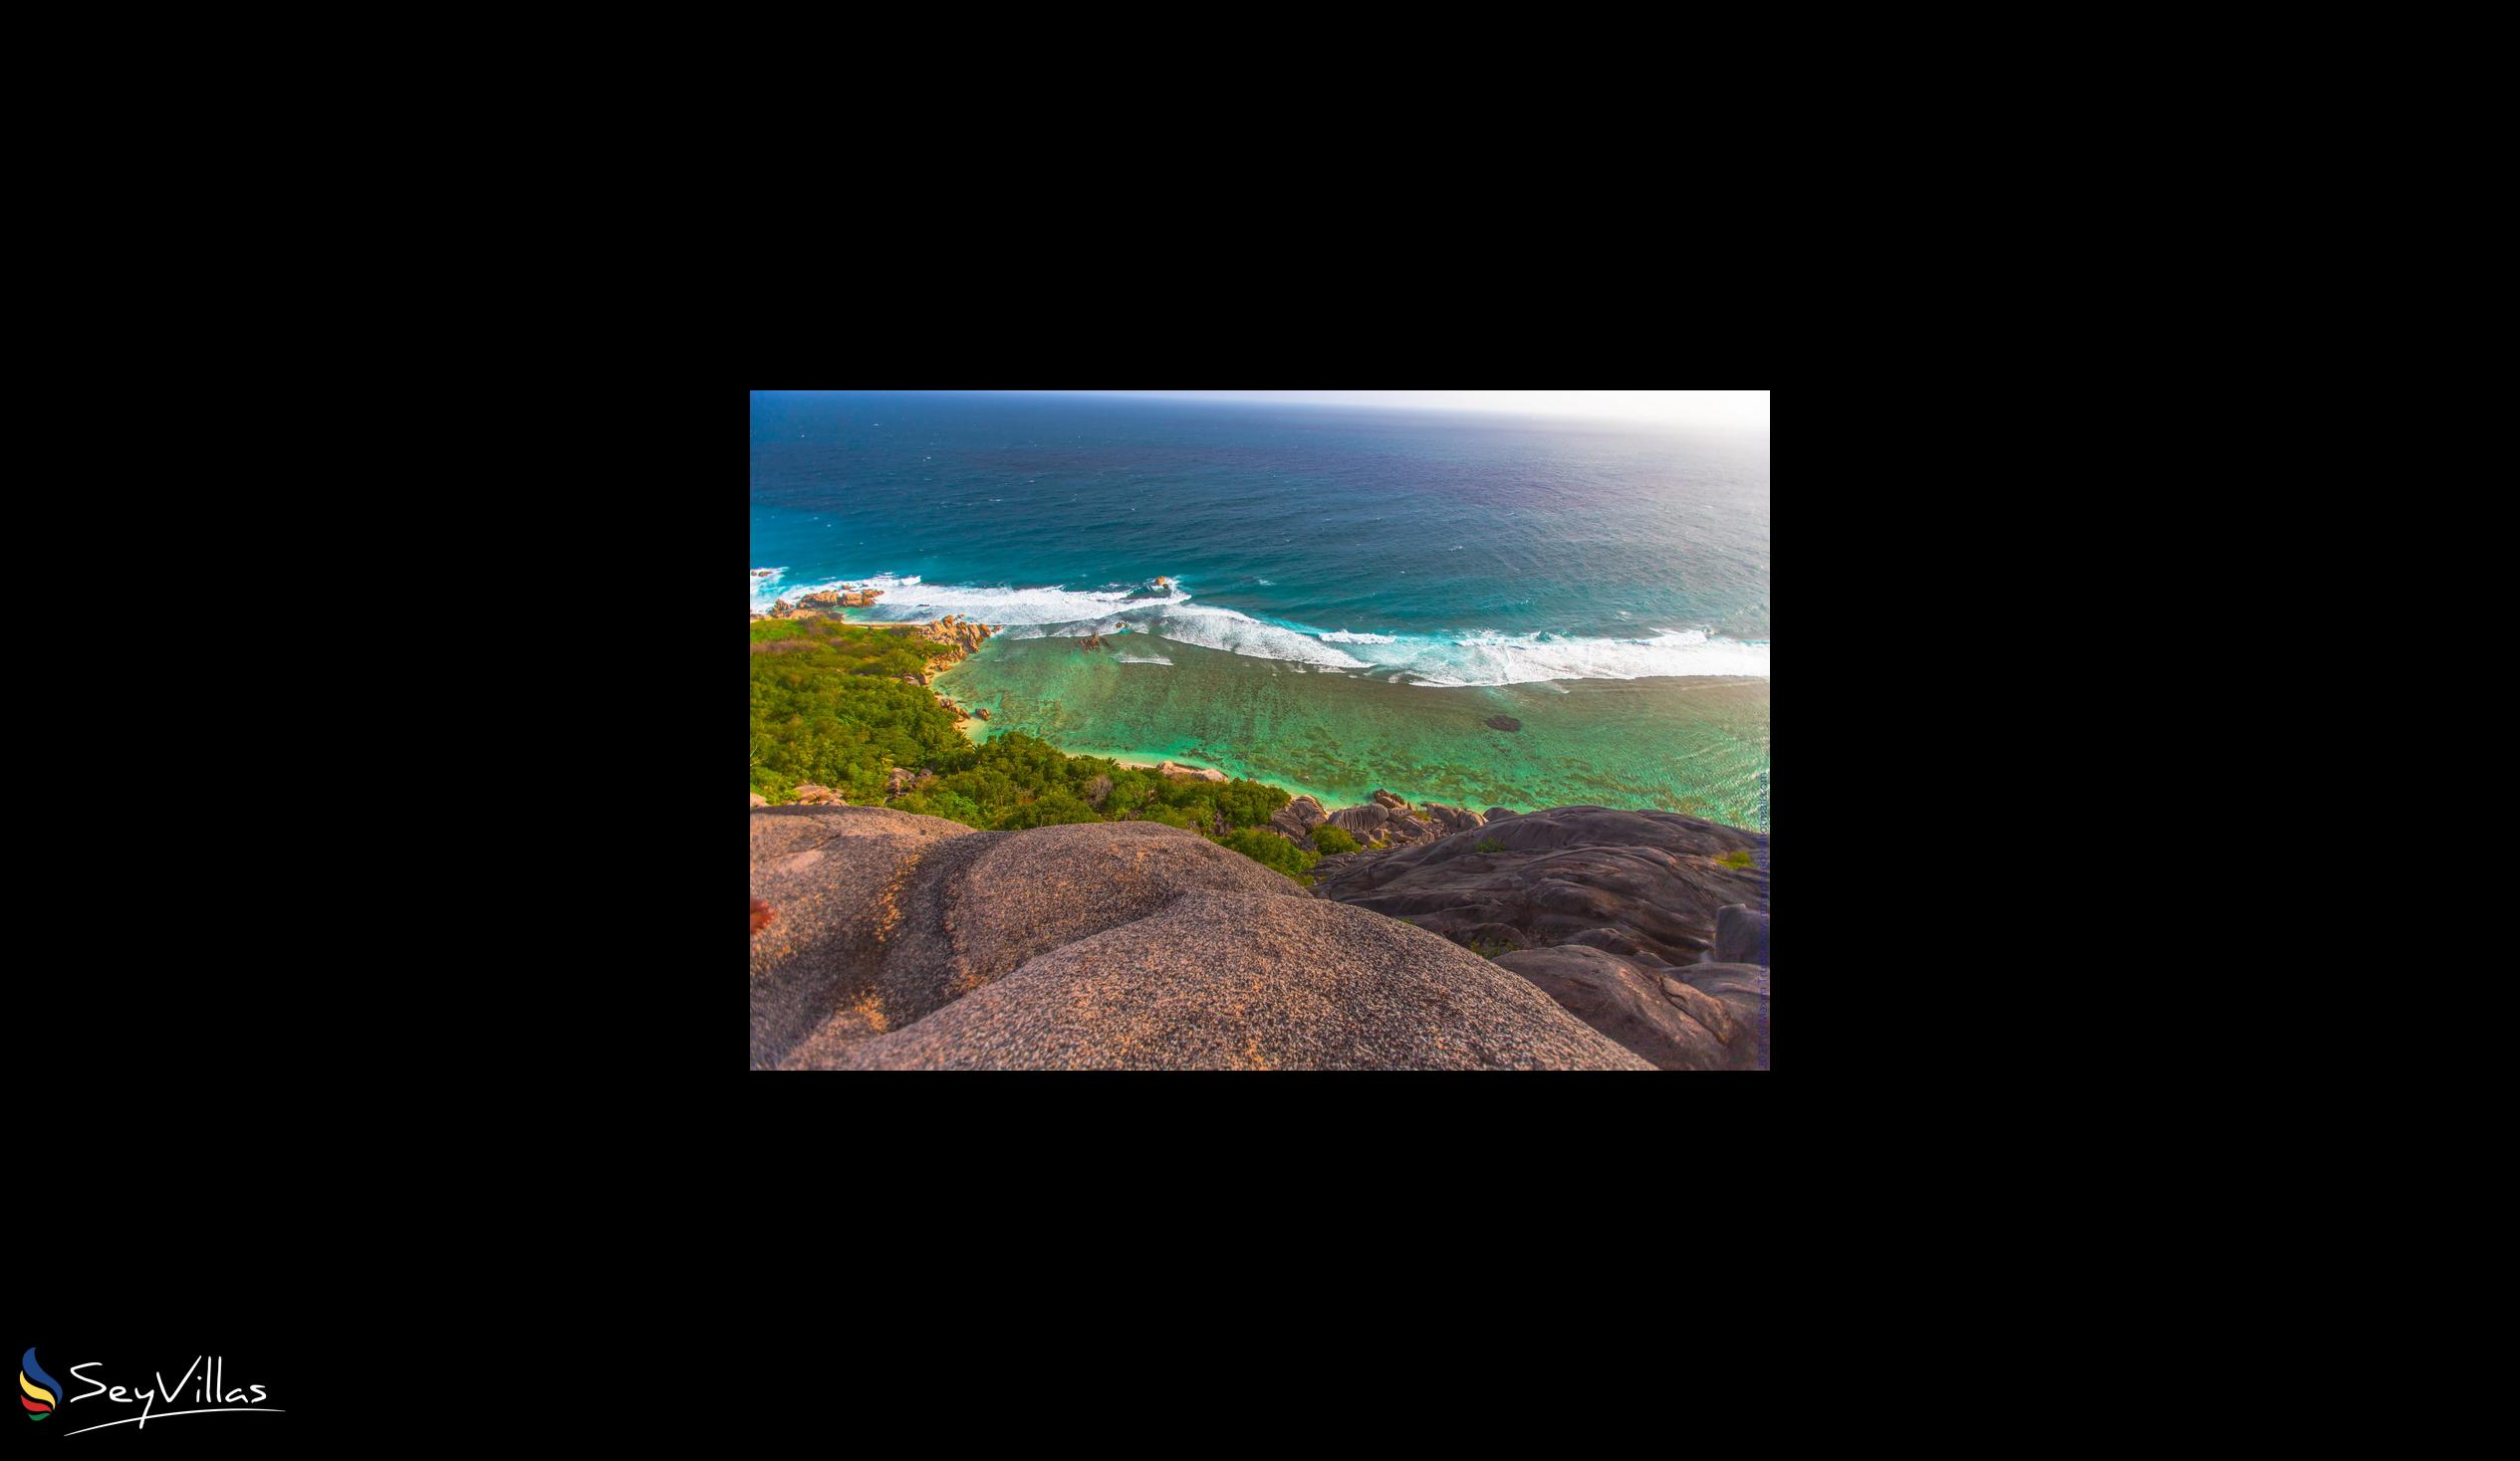 Foto 31: Ambiance Villa - Posizione - La Digue (Seychelles)